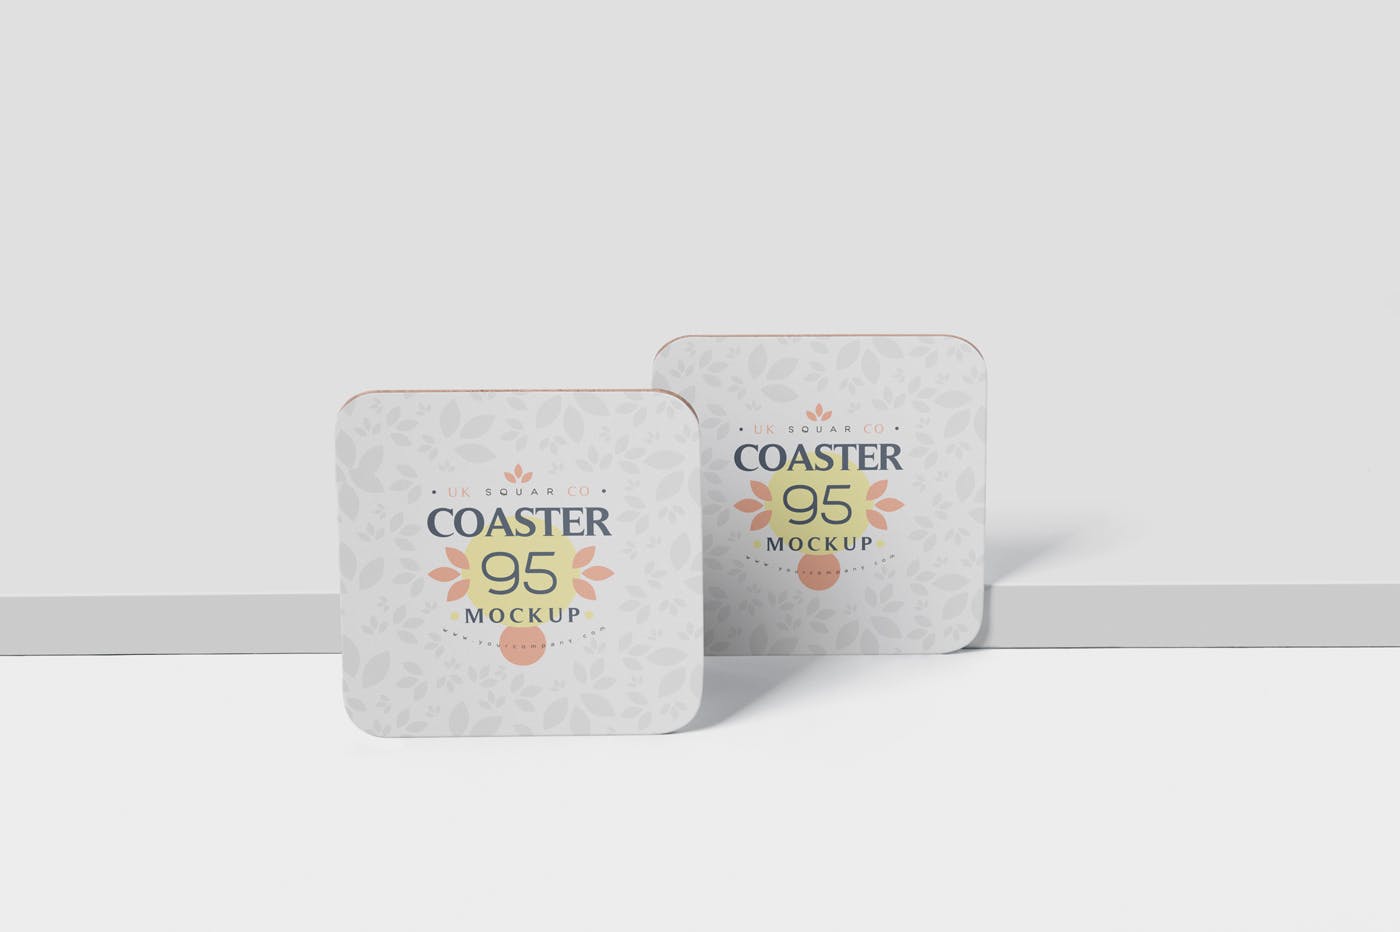 圆角方形杯垫图案设计第一素材精选模板 Square Coaster Mock-Up with Round Corner插图(3)